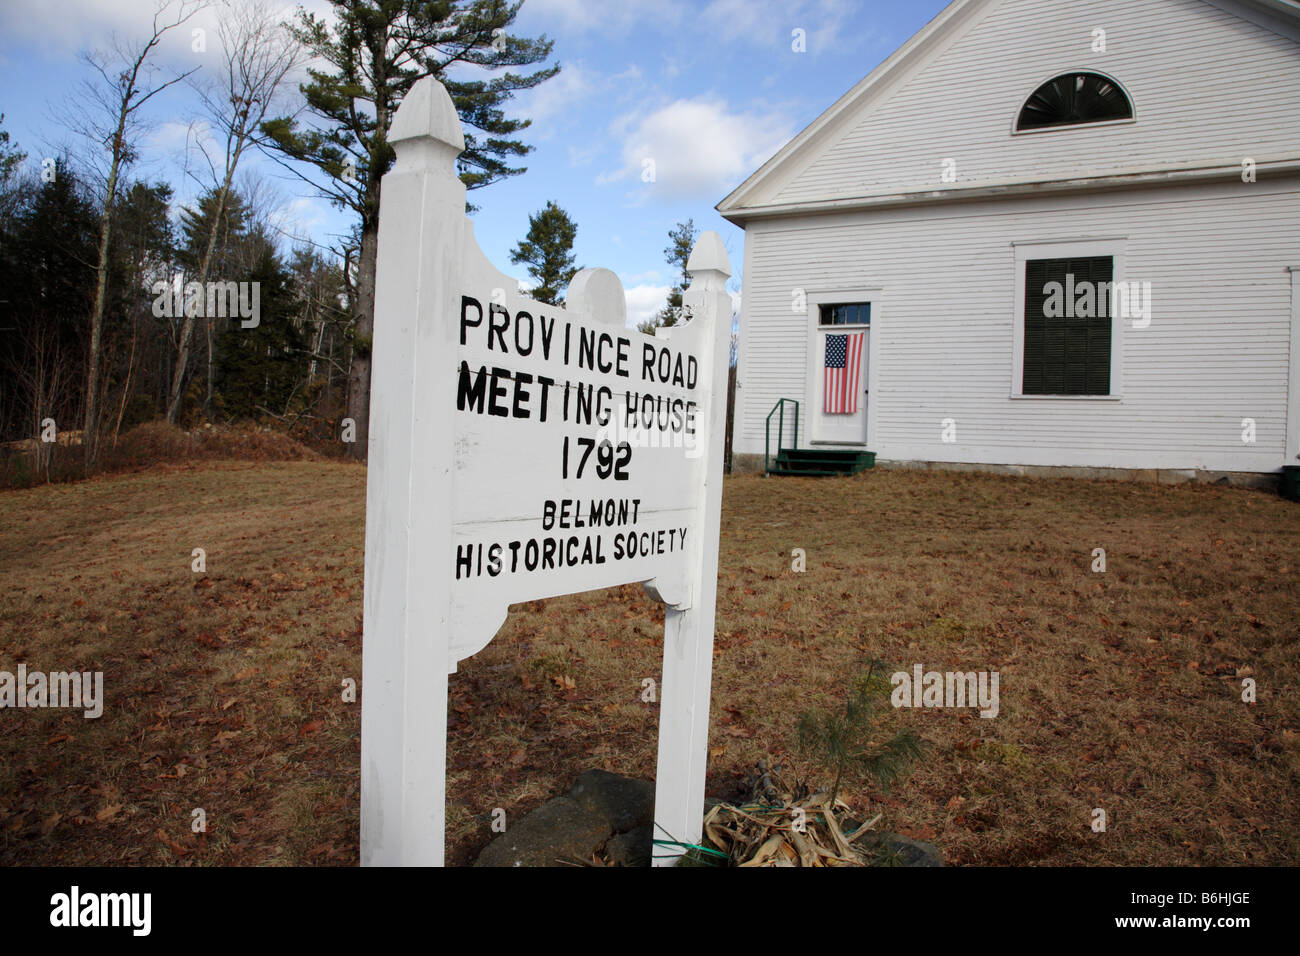 Provincia Road casa de reuniones durante los meses de otoño situado en Belmont New Hampshire, EE.UU. Foto de stock